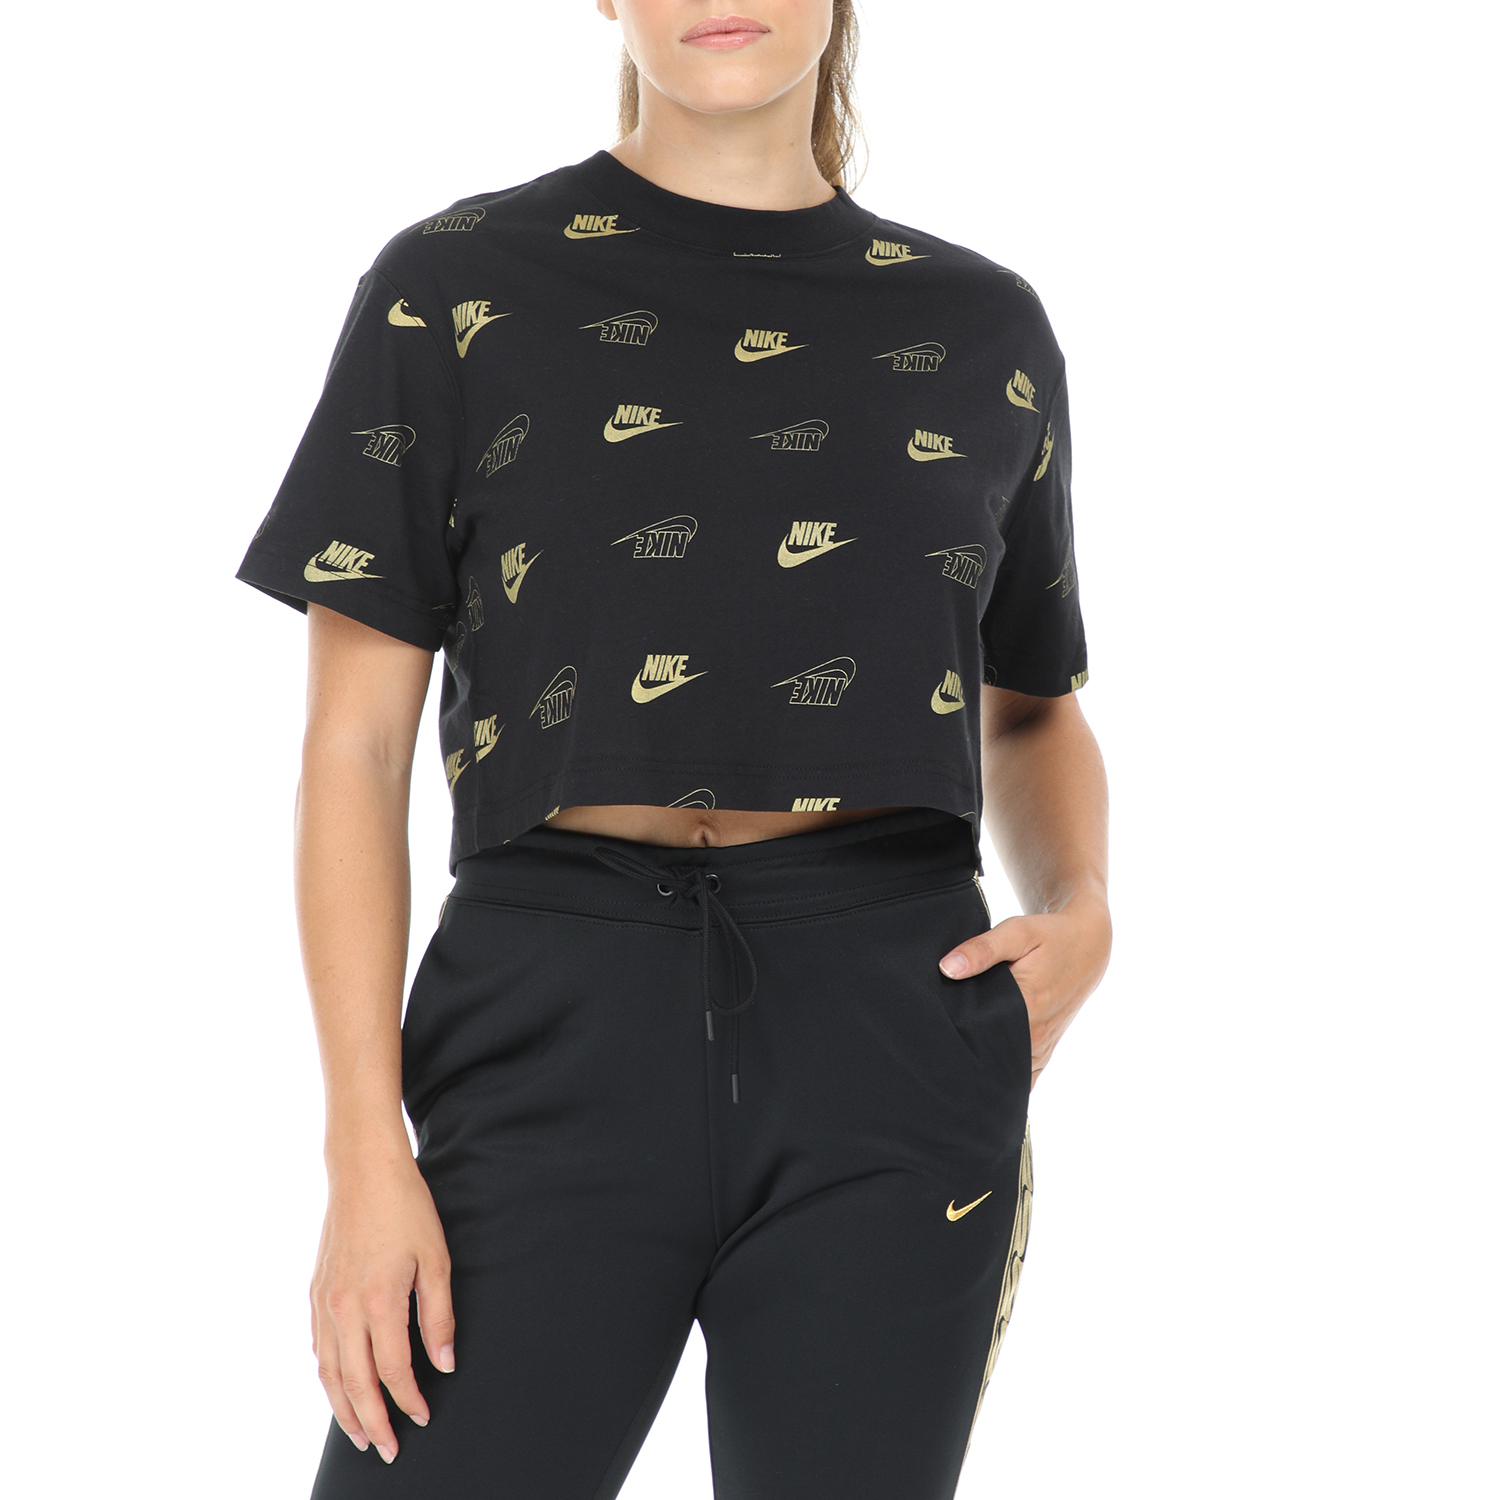 Γυναικεία/Ρούχα/Αθλητικά/T-shirt-Τοπ NIKE - Γυναικεία κοντομάνικη μπλούζα NIKE TOP CROP SHINE μαύρο